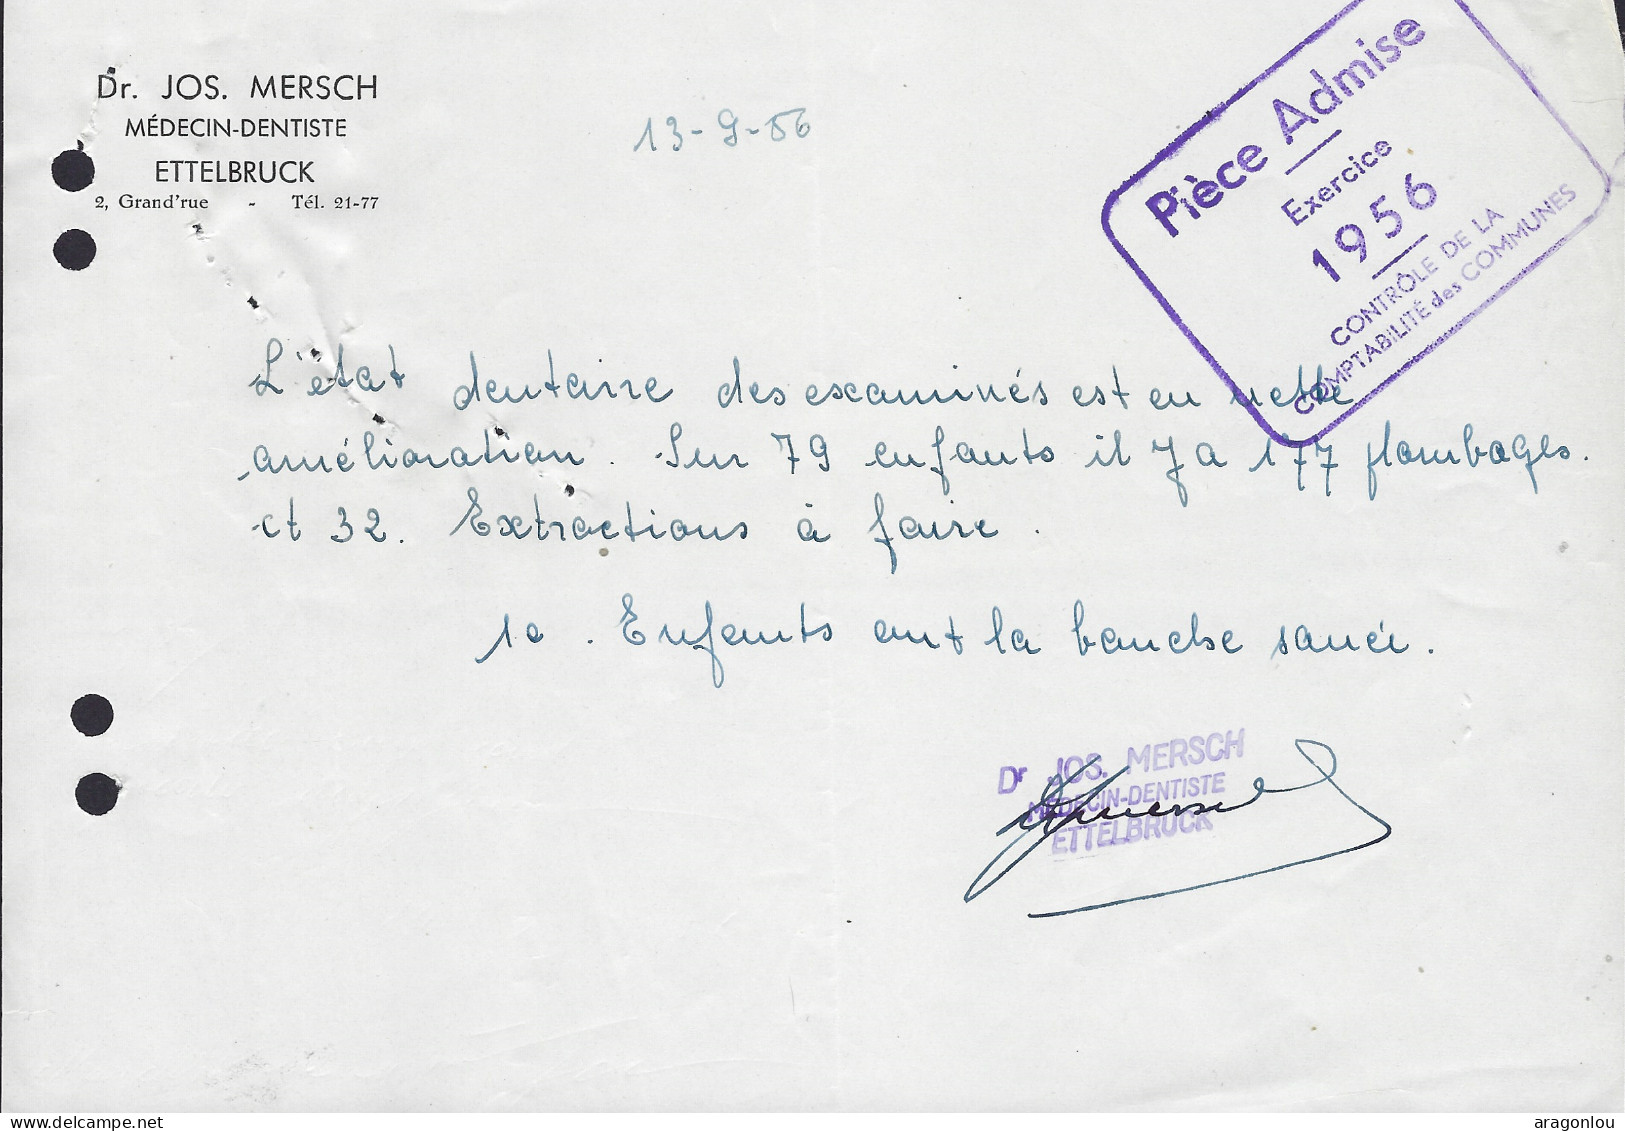 Luxembourg - Luxemburg - Facture -  Dr. JOS. MERSCH , MÉDECIN DENTISTE , ETTELBRUCK   1956 - Luxemburgo